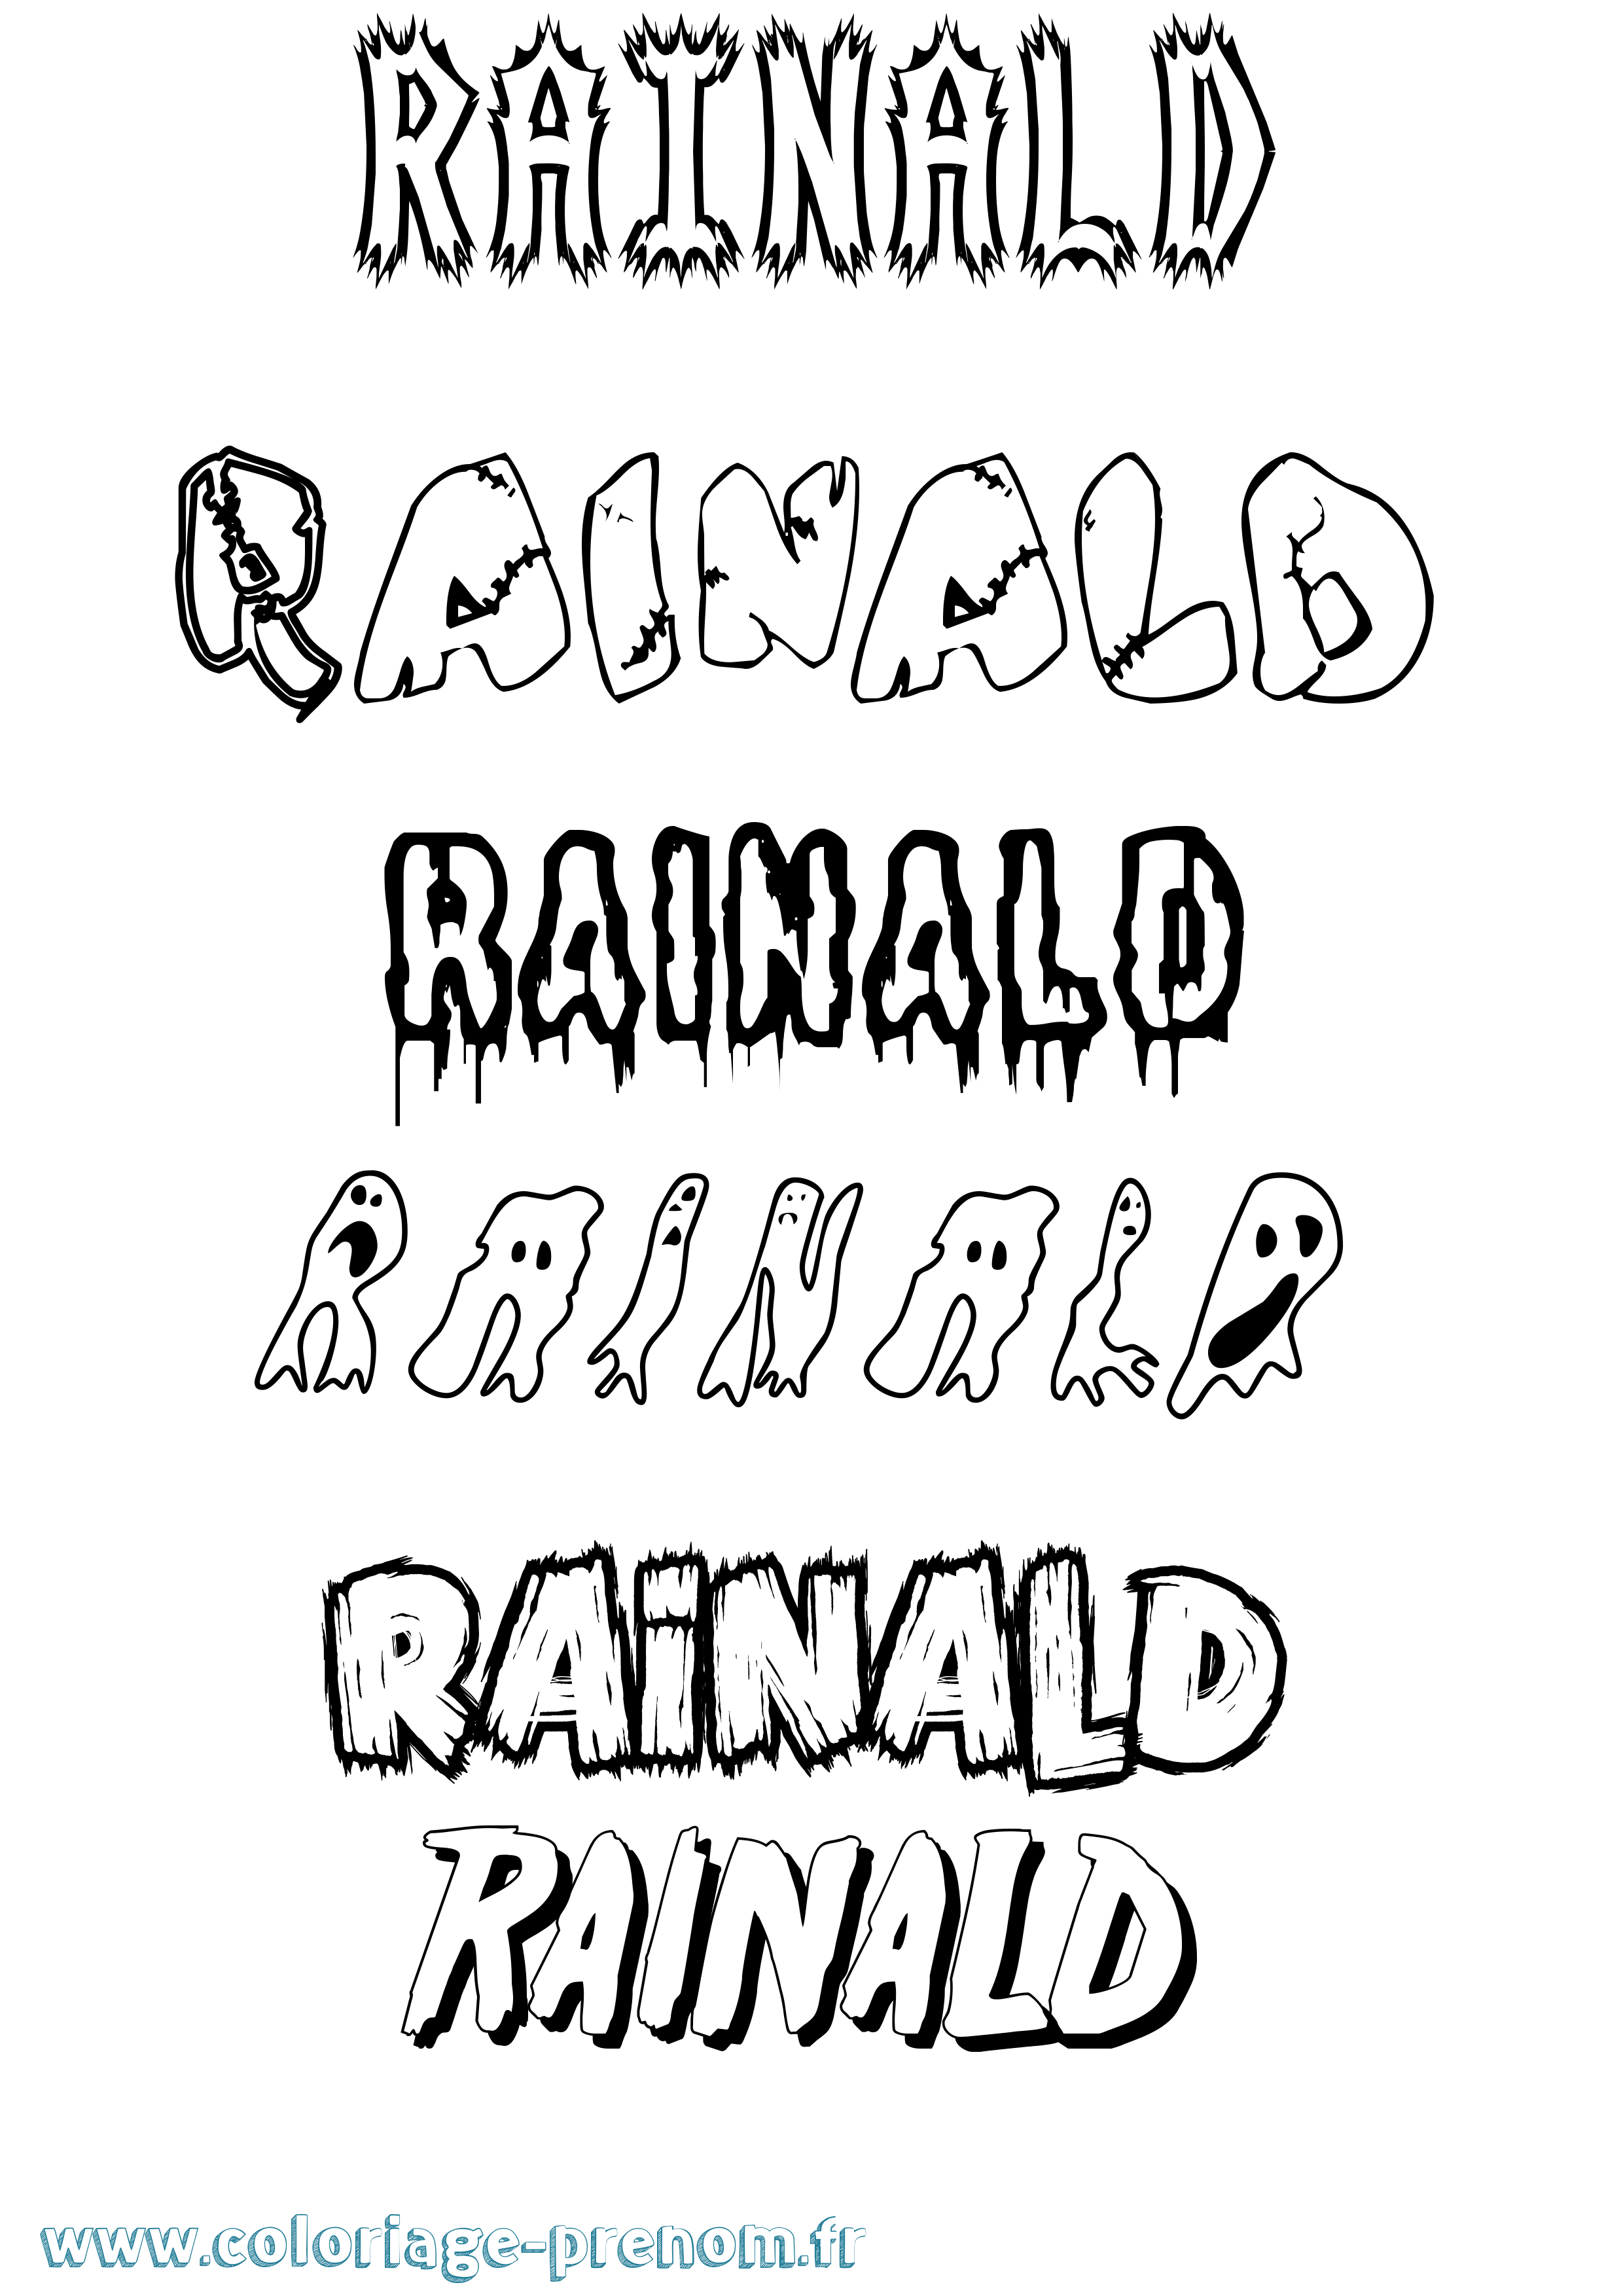 Coloriage prénom Rainald Frisson